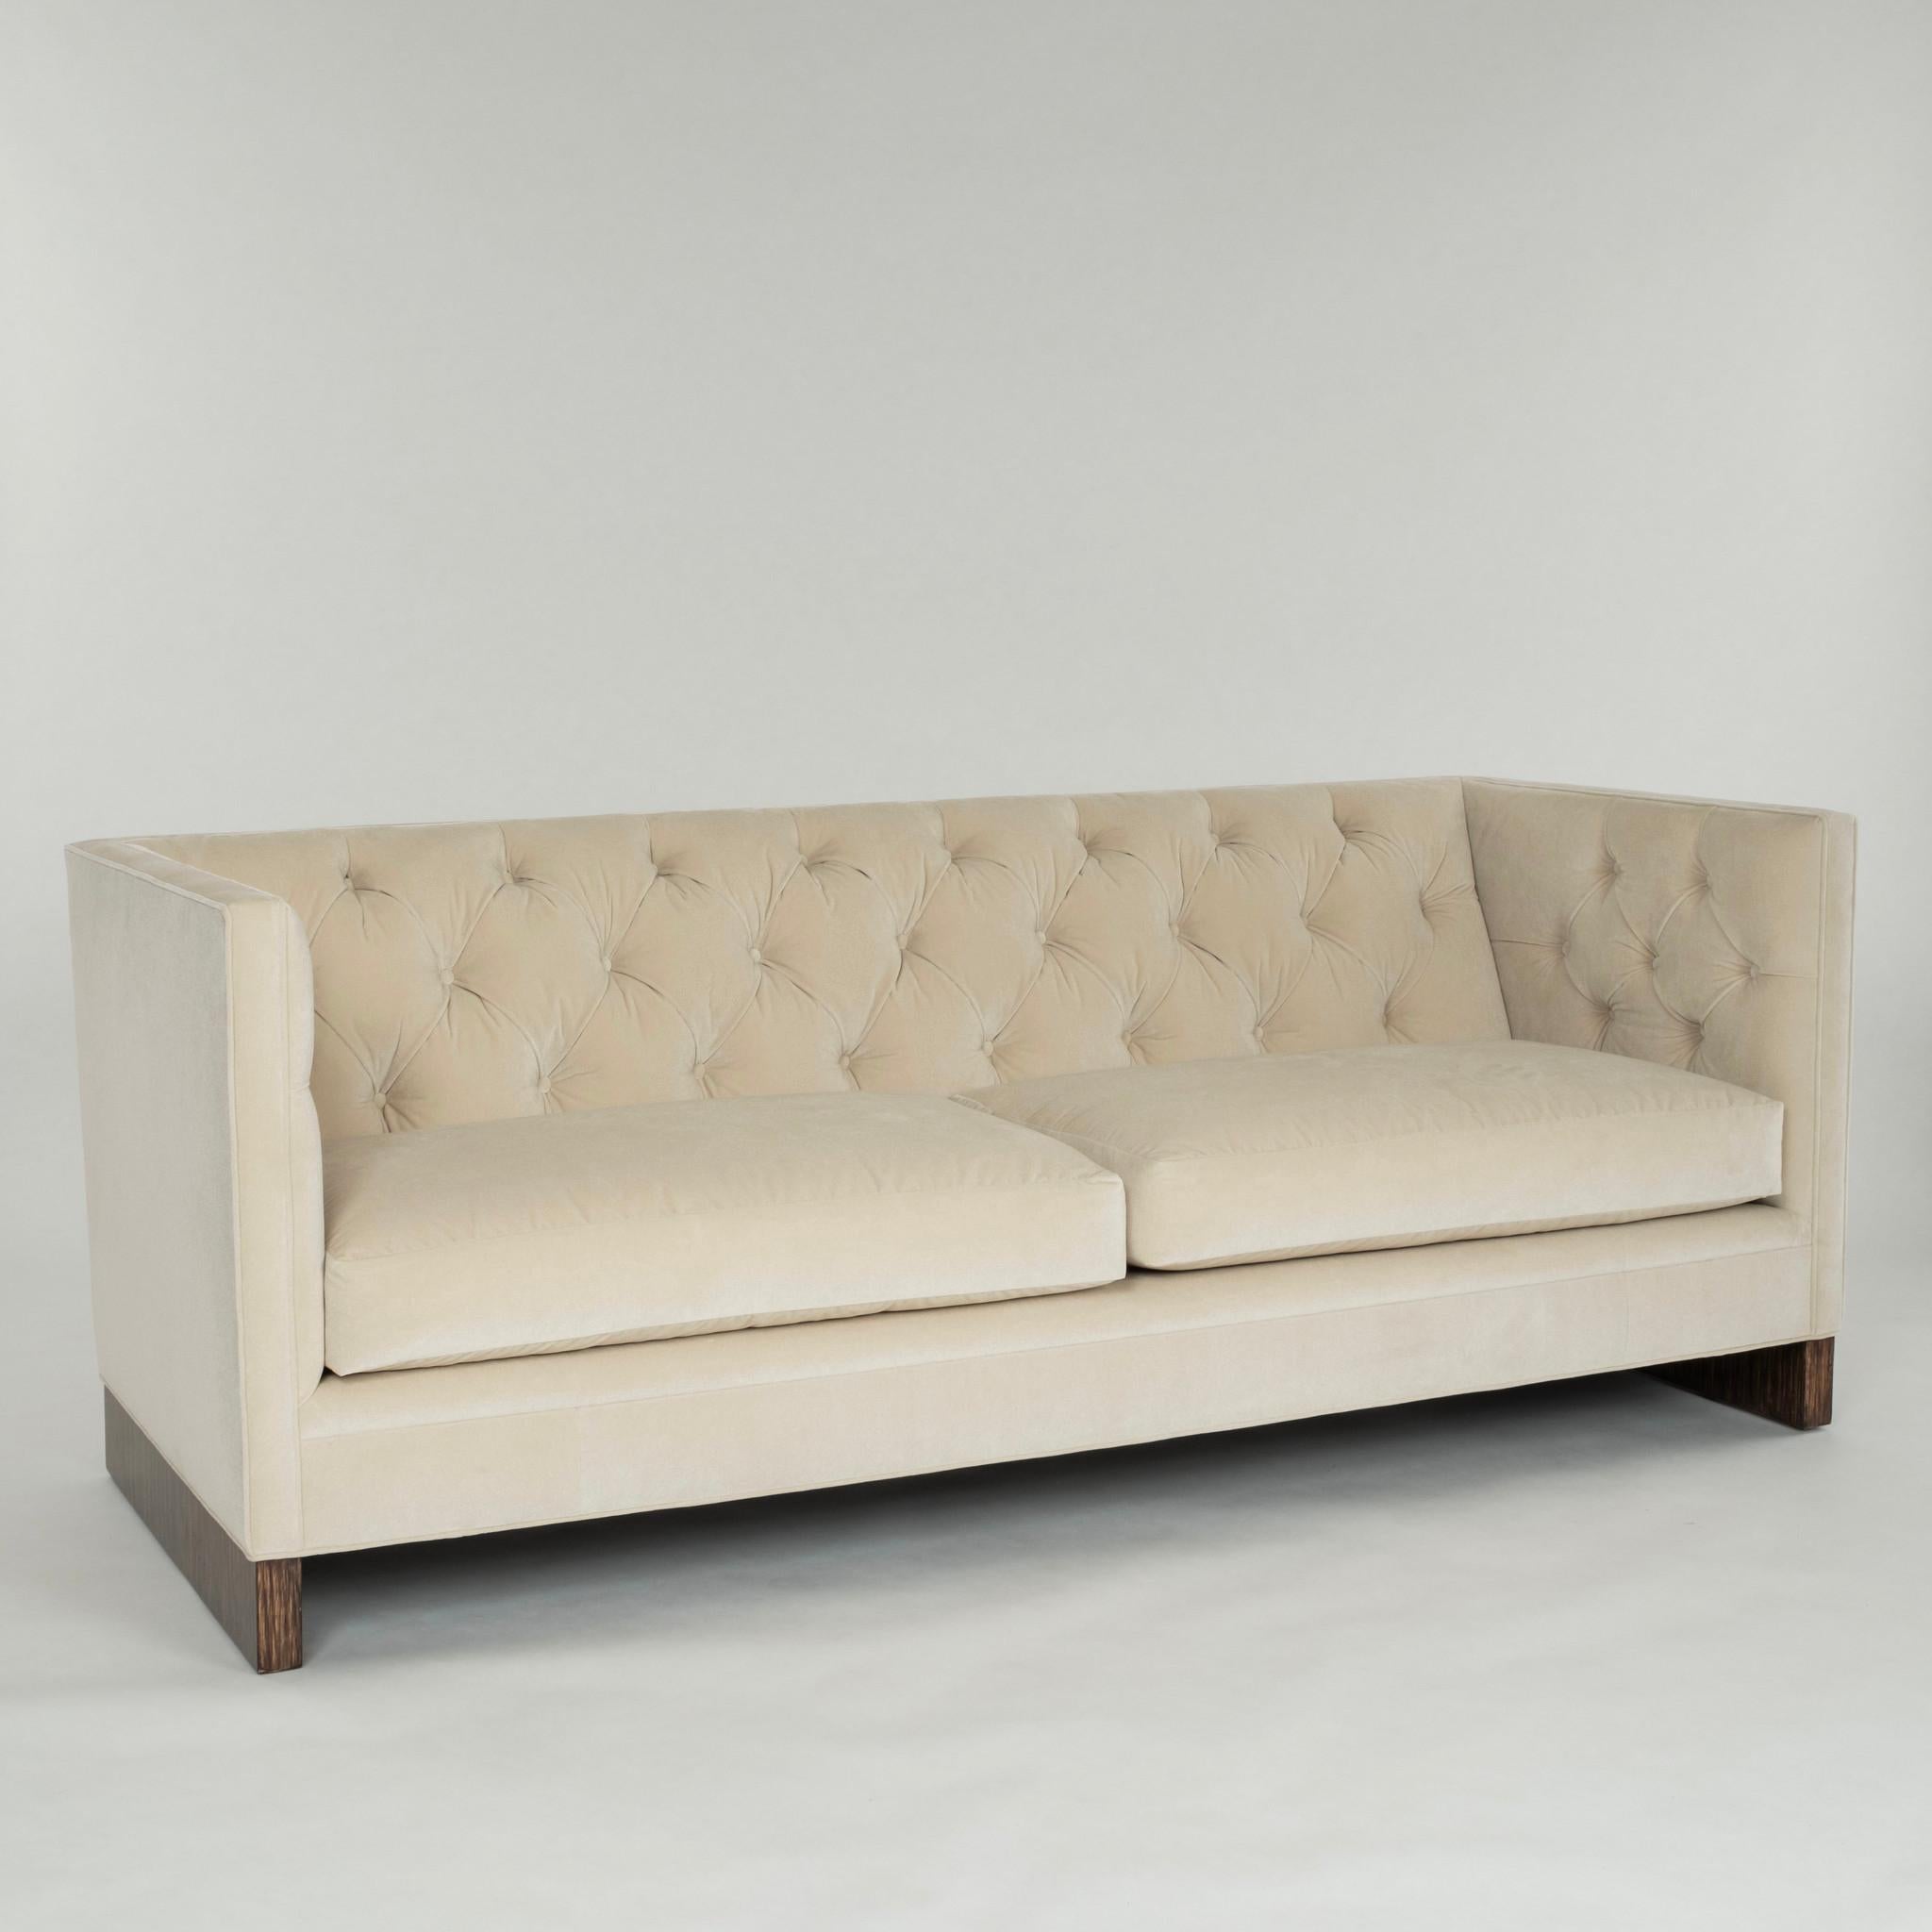 Smoking-Sofa des 20. Jahrhunderts, neu gepolstert, mit beige-ecruem Funktionsstoff,  Knopftufting, mit Federn umhüllte Spiralfeder-Sitzkissen, gestützt von Makassar-Ebenholz.